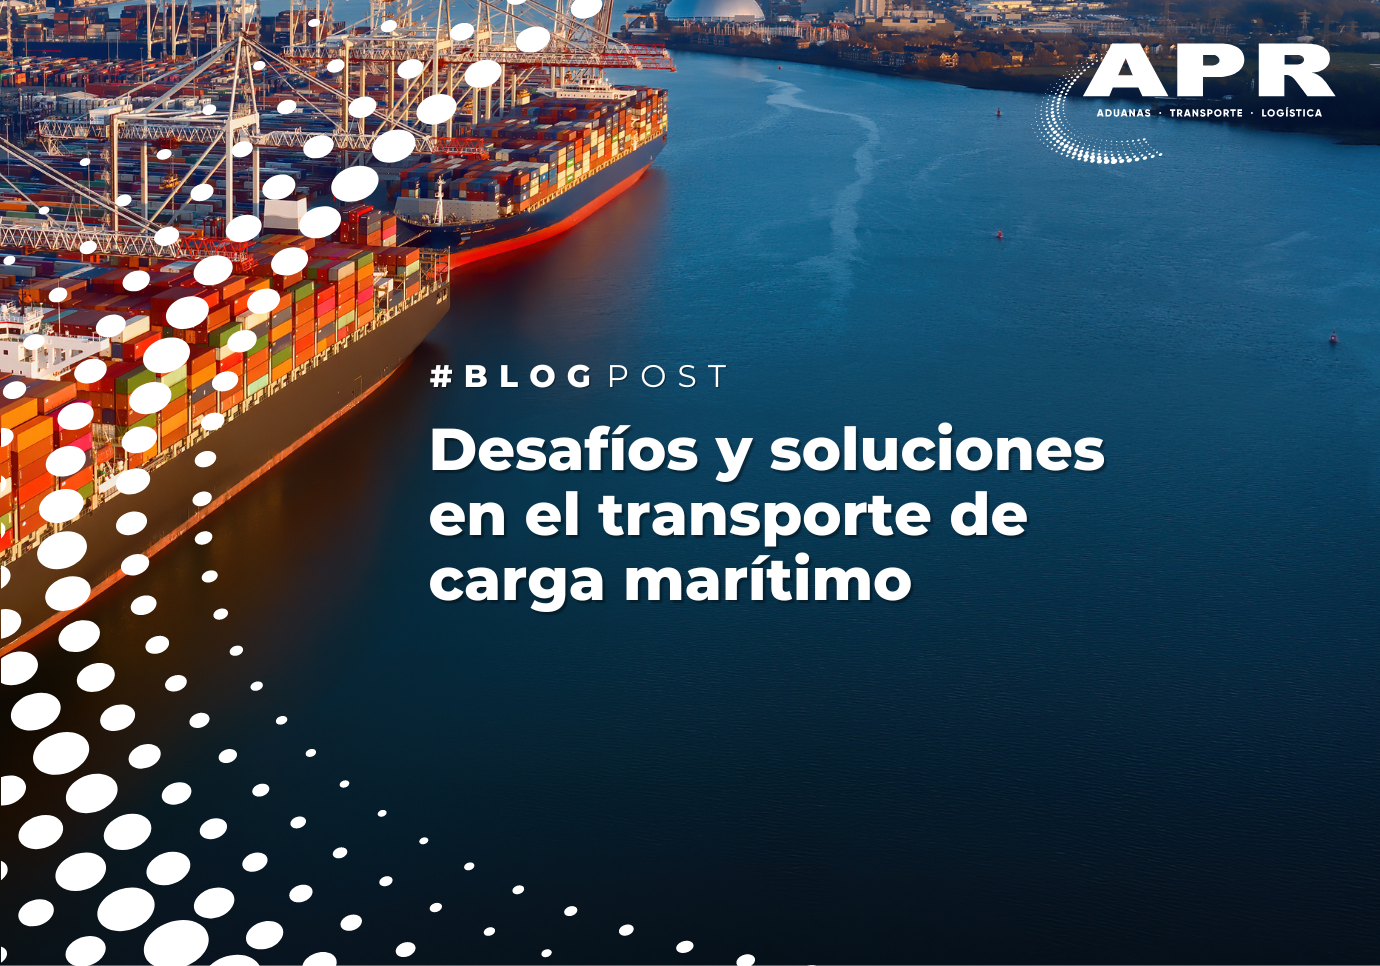 Desafíos y soluciones en el transporte de carga marítimo: cómo superar retrasos, daños, regulaciones, costos y sostenibilidad